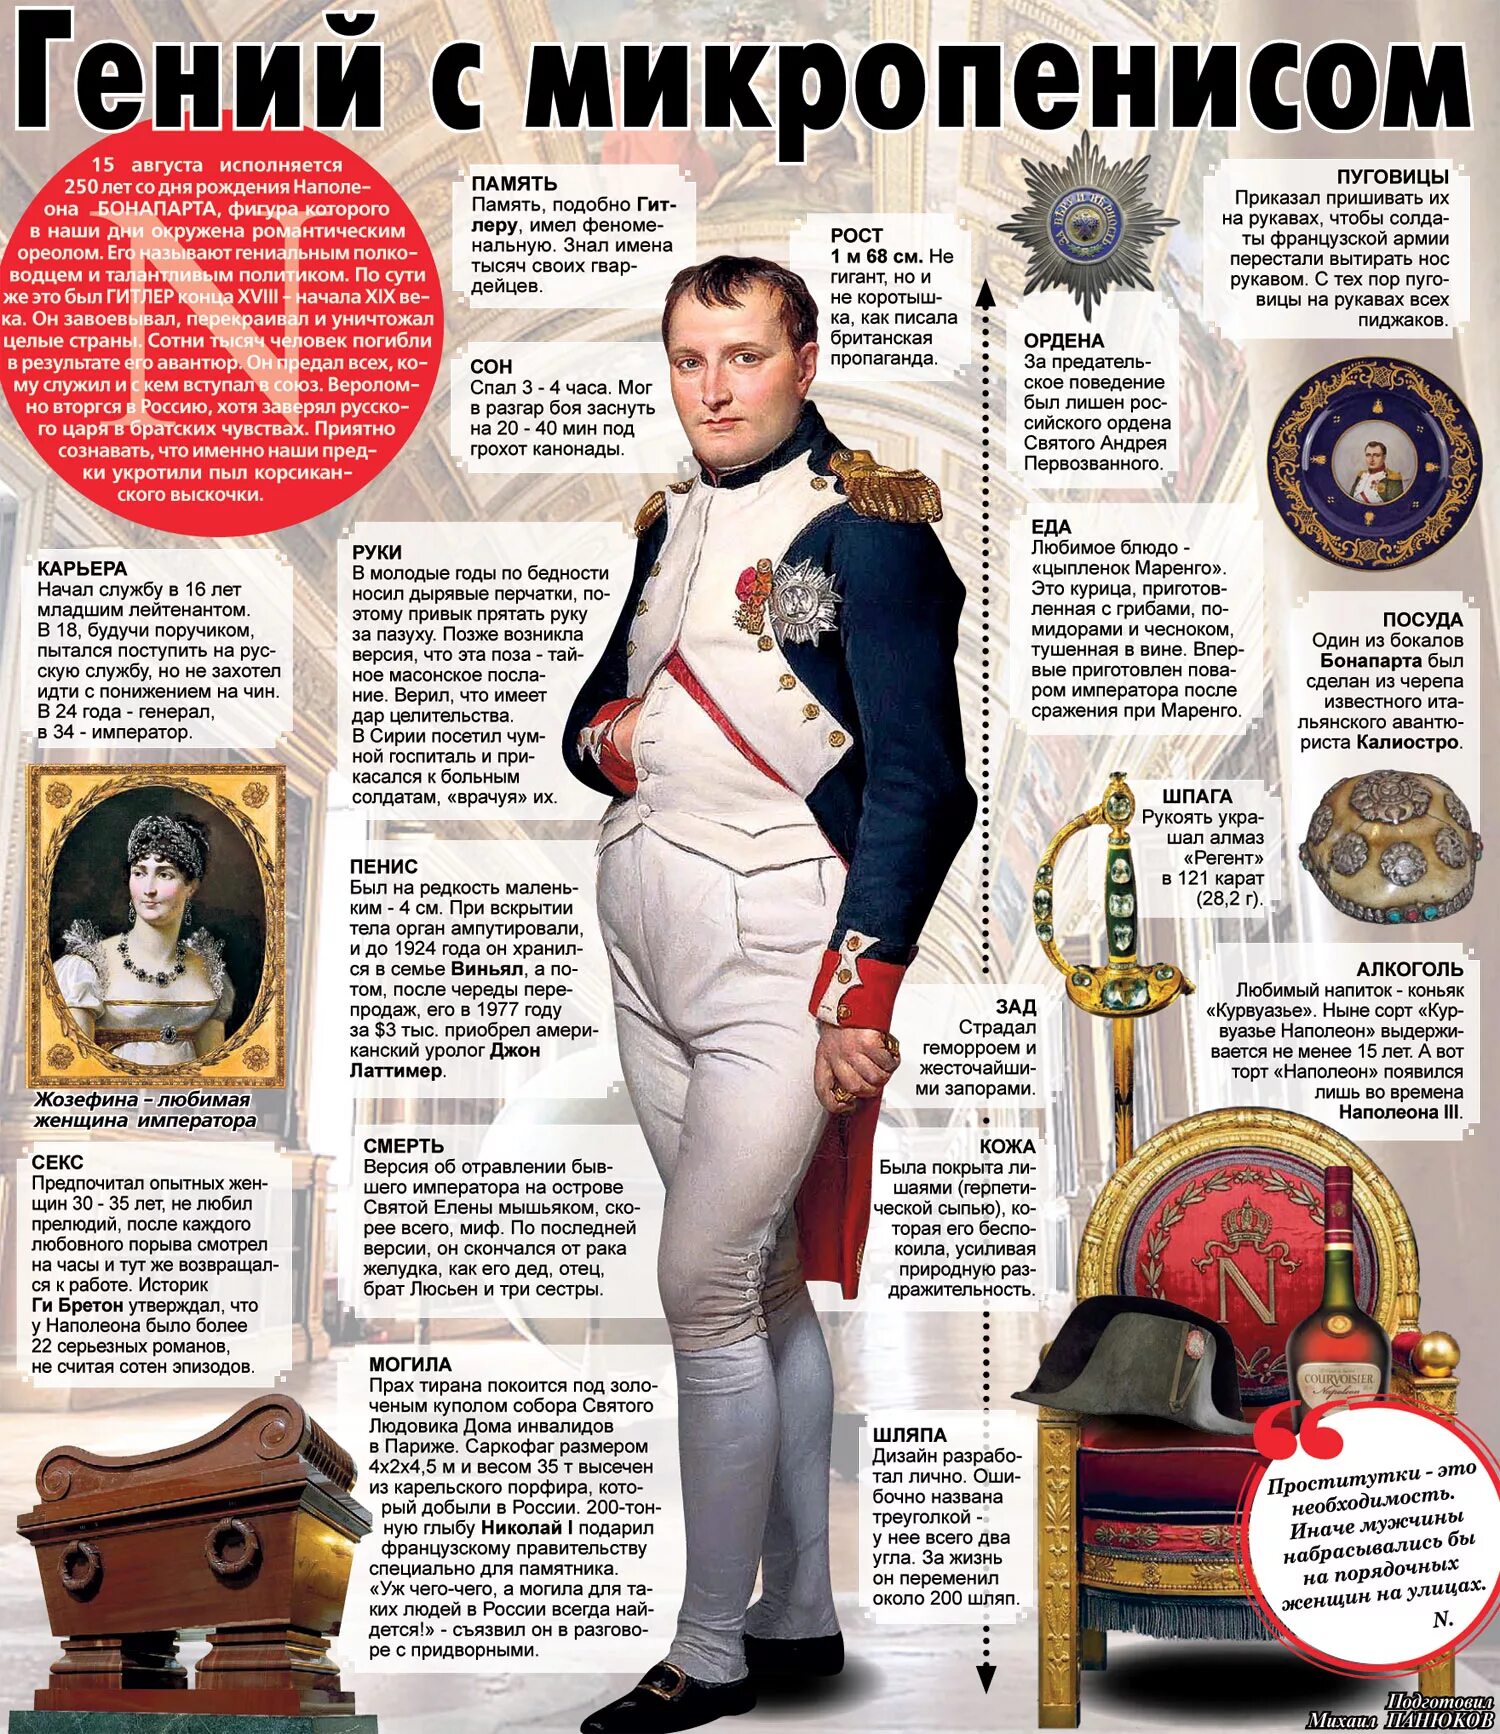 Наполеон бонапарт рост в см. Рост Наполеона Бонапарта в см реальные факты. Рост Наполеона 1 Бонапарта. Наполеон Бонапарт рост и вес. Какого роста был Наполеон Бонапарт.